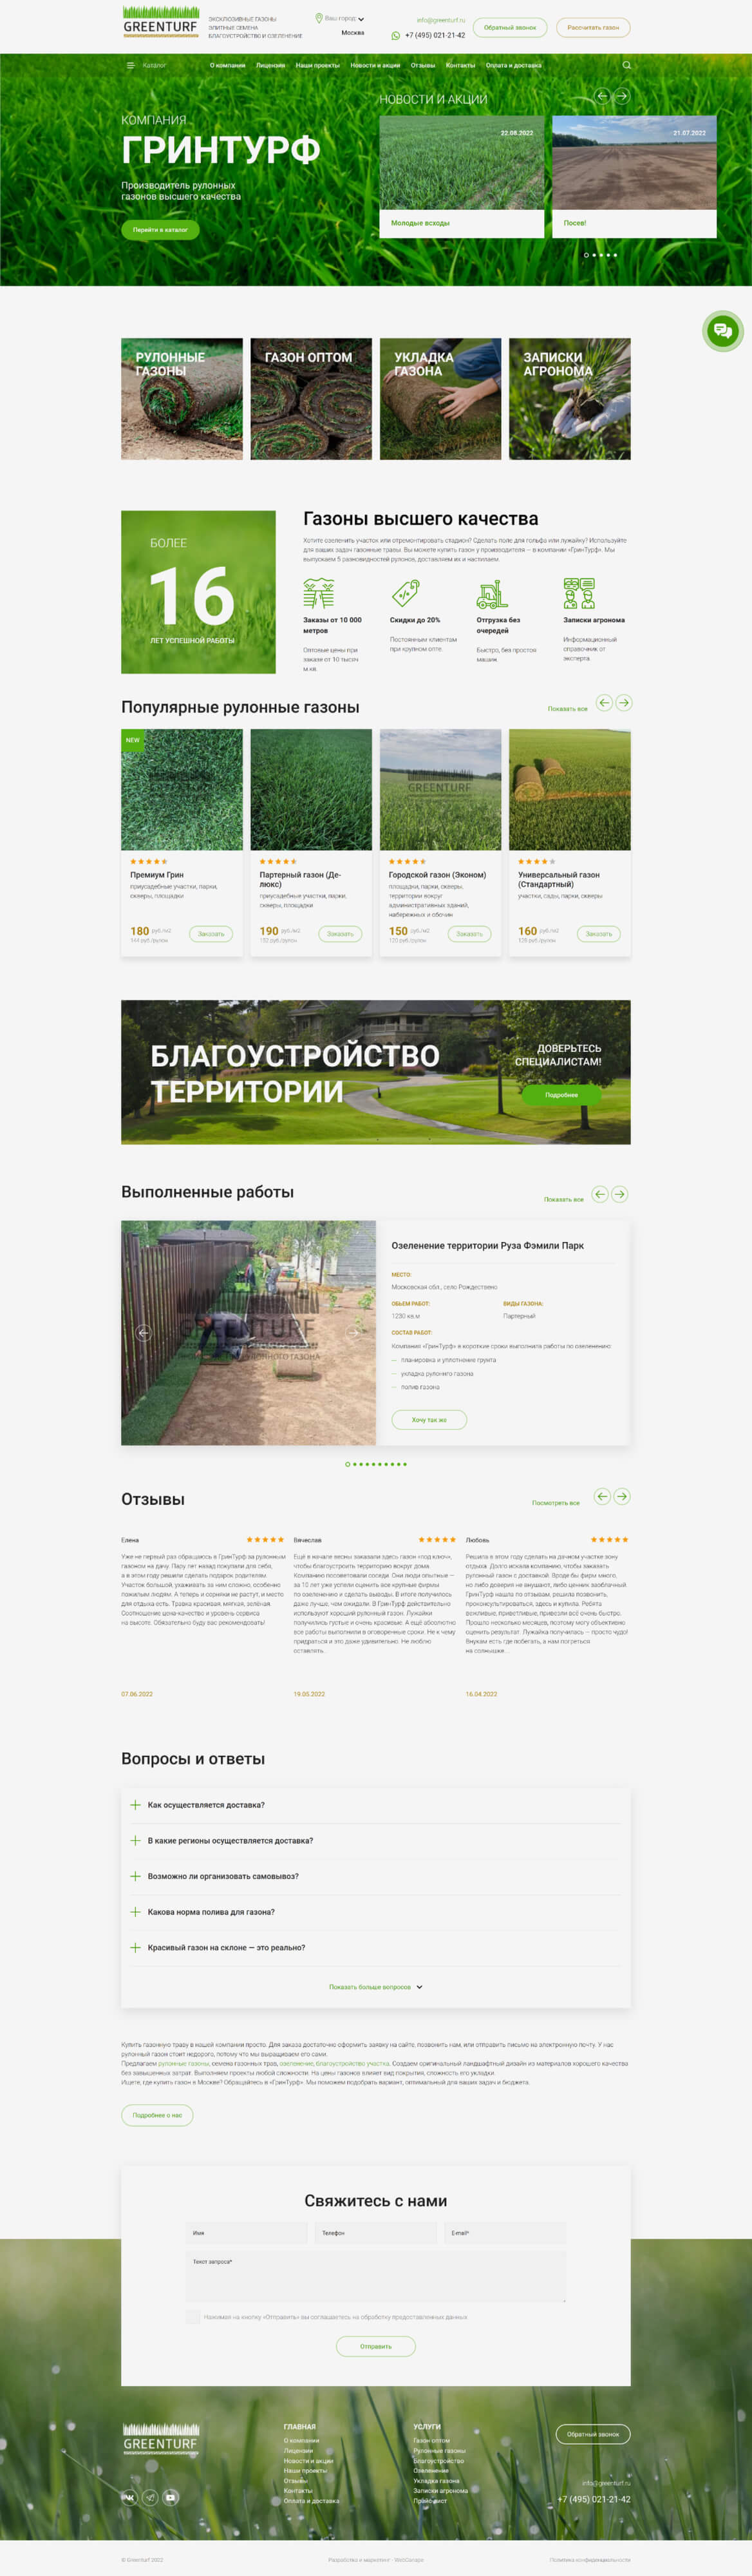 Создание сайта-каталога производителя рулонных газонов